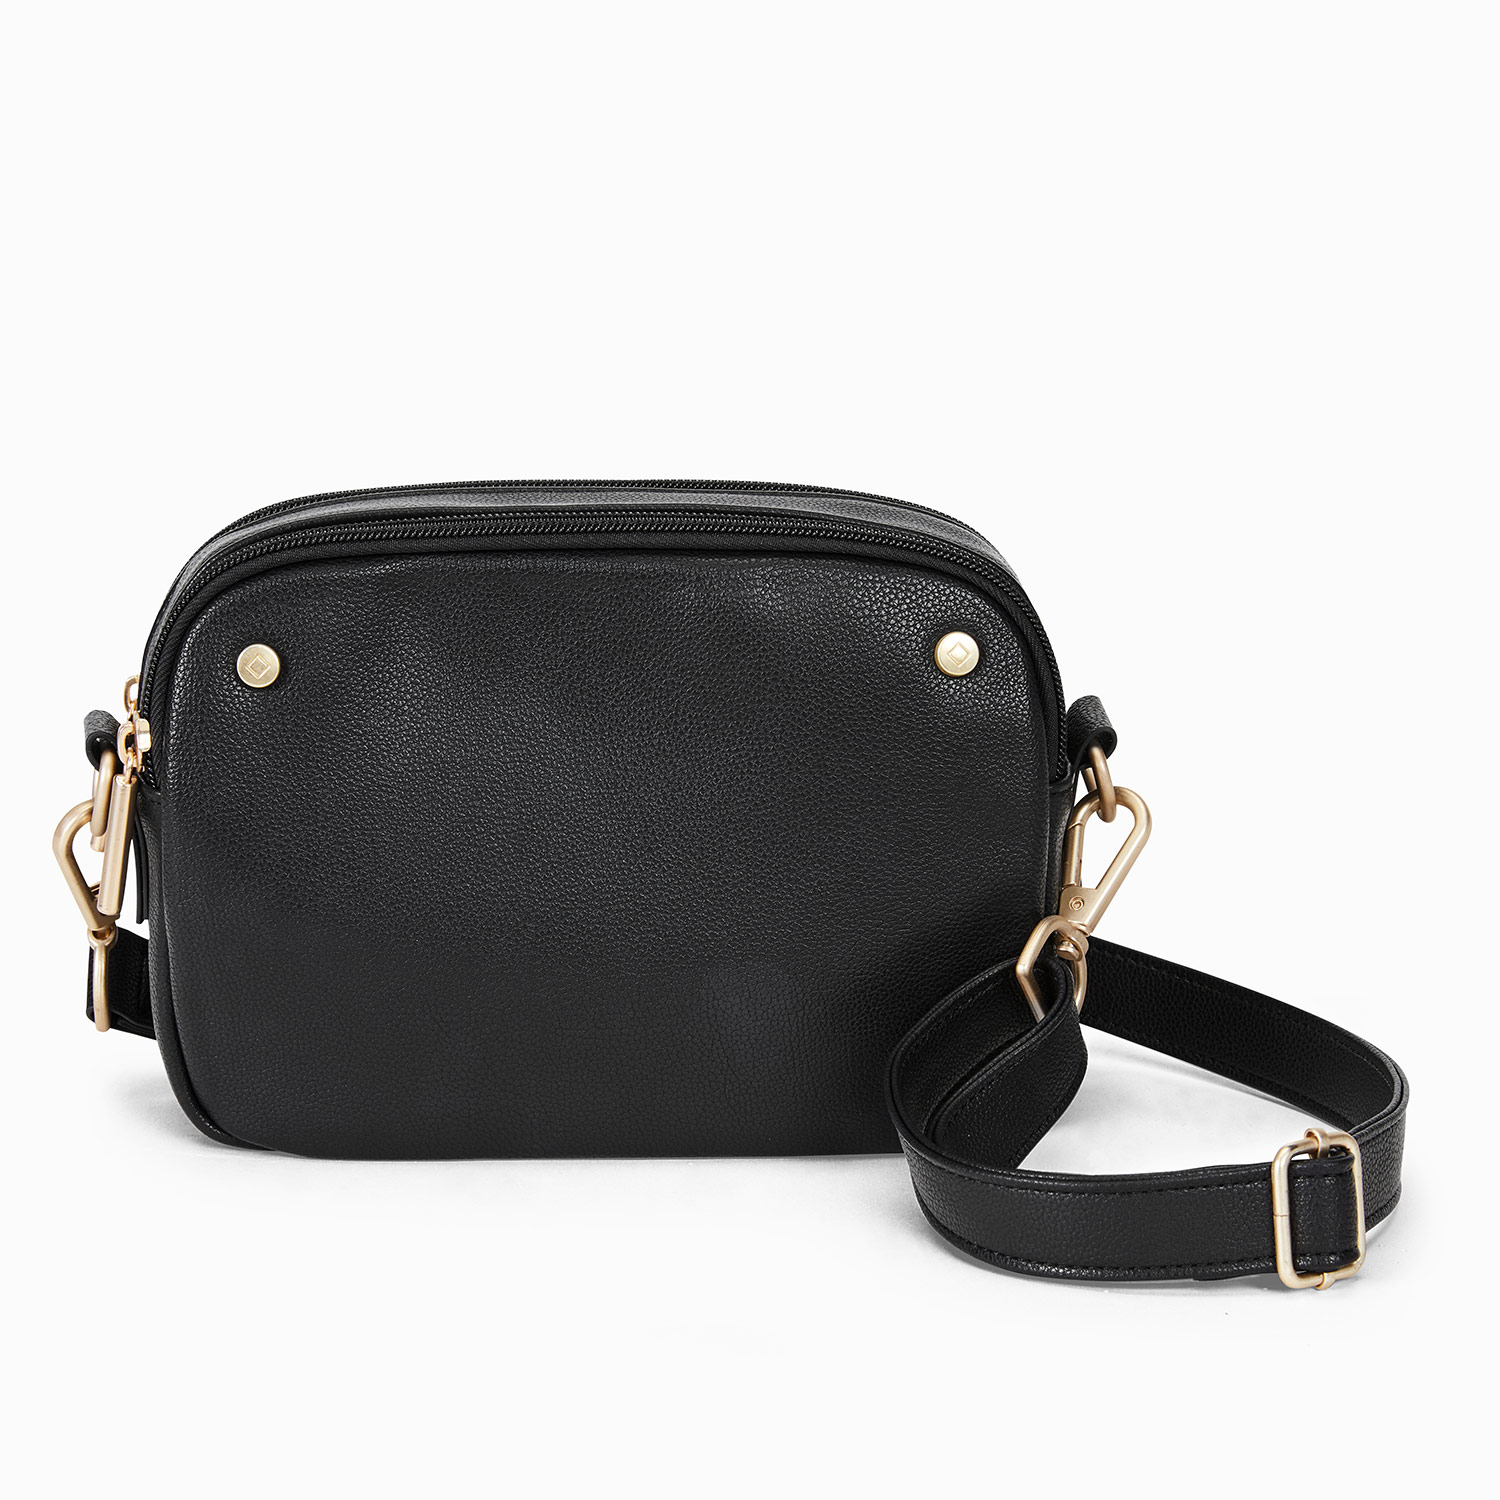 DIY - Peggy Double Zip Handbag - How to make dual zipper bag - Cara membuat  tas dobel resleting - YouTube